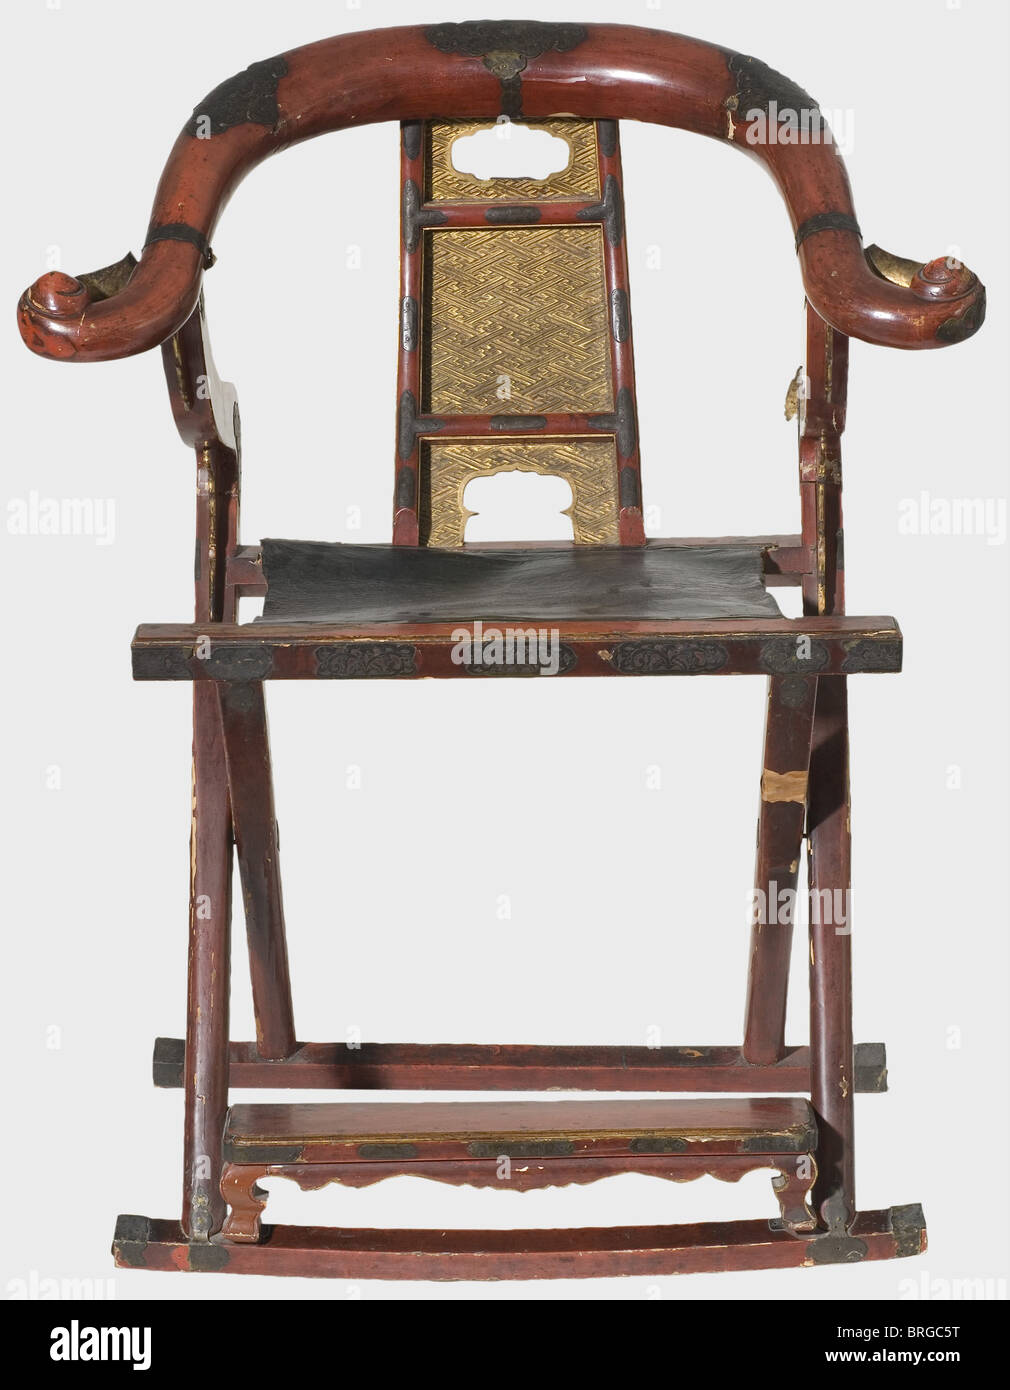 Une chaise pliante japonaise (kyokuroku), bois laqué rouge du XIXe siècle, dossier doré sculpté avec des motifs swastika, siège en cuir noir, garnitures en laiton gravées. Imperfections et dommages nécessitant une restauration. Hauteur 103 cm, largeur 83 cm, longueur plié 116 cm. Kyokurokus ont été introduits au Japon par des prêtres chinois. Samouraï a pris ces chaises pliantes avec eux lors de leurs voyages et campagnes, mais ils ont également été employés dans des occasions de fête comme le Coronation impérial. Ils sont, cependant, le plus souvent trouvés dans les temples Shinto, où ils ont été utilisés comme décoratifs, droits additionnels-Clearences-non disponible Banque D'Images